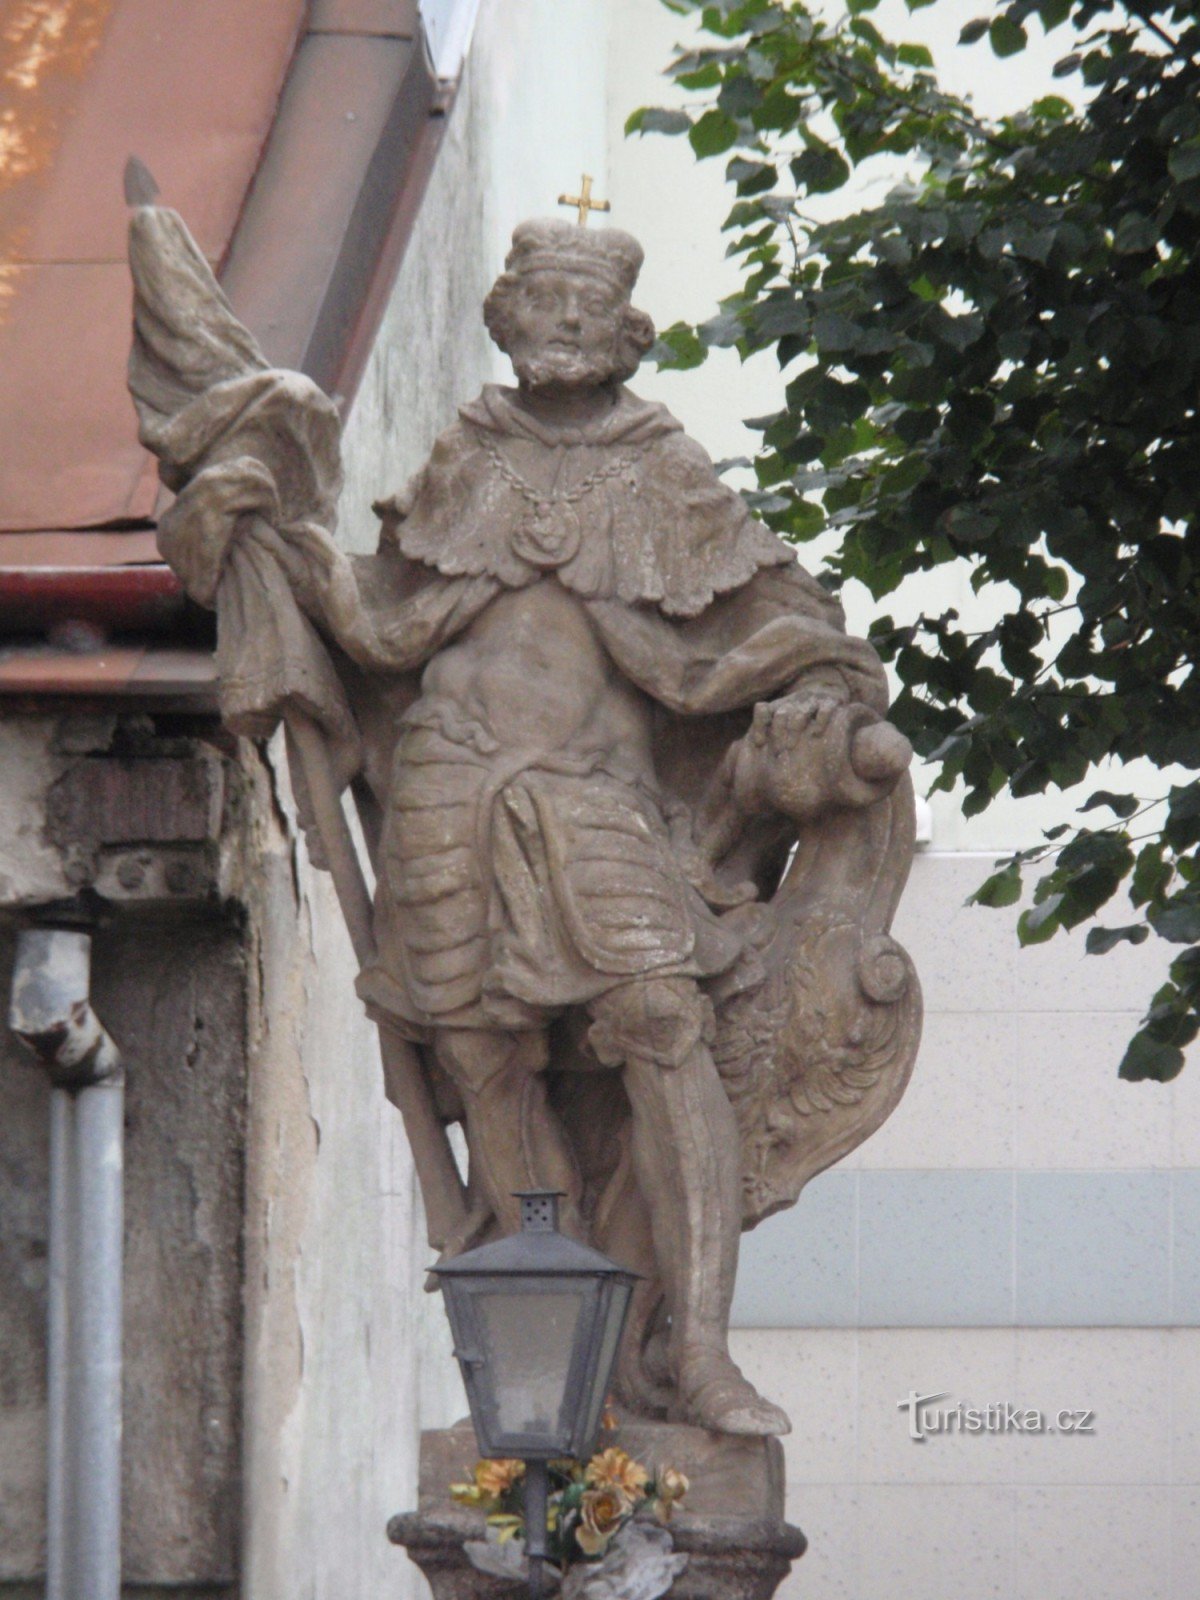 Velké Meziříčí - sculpturi baroc pe strada Hornoměstská